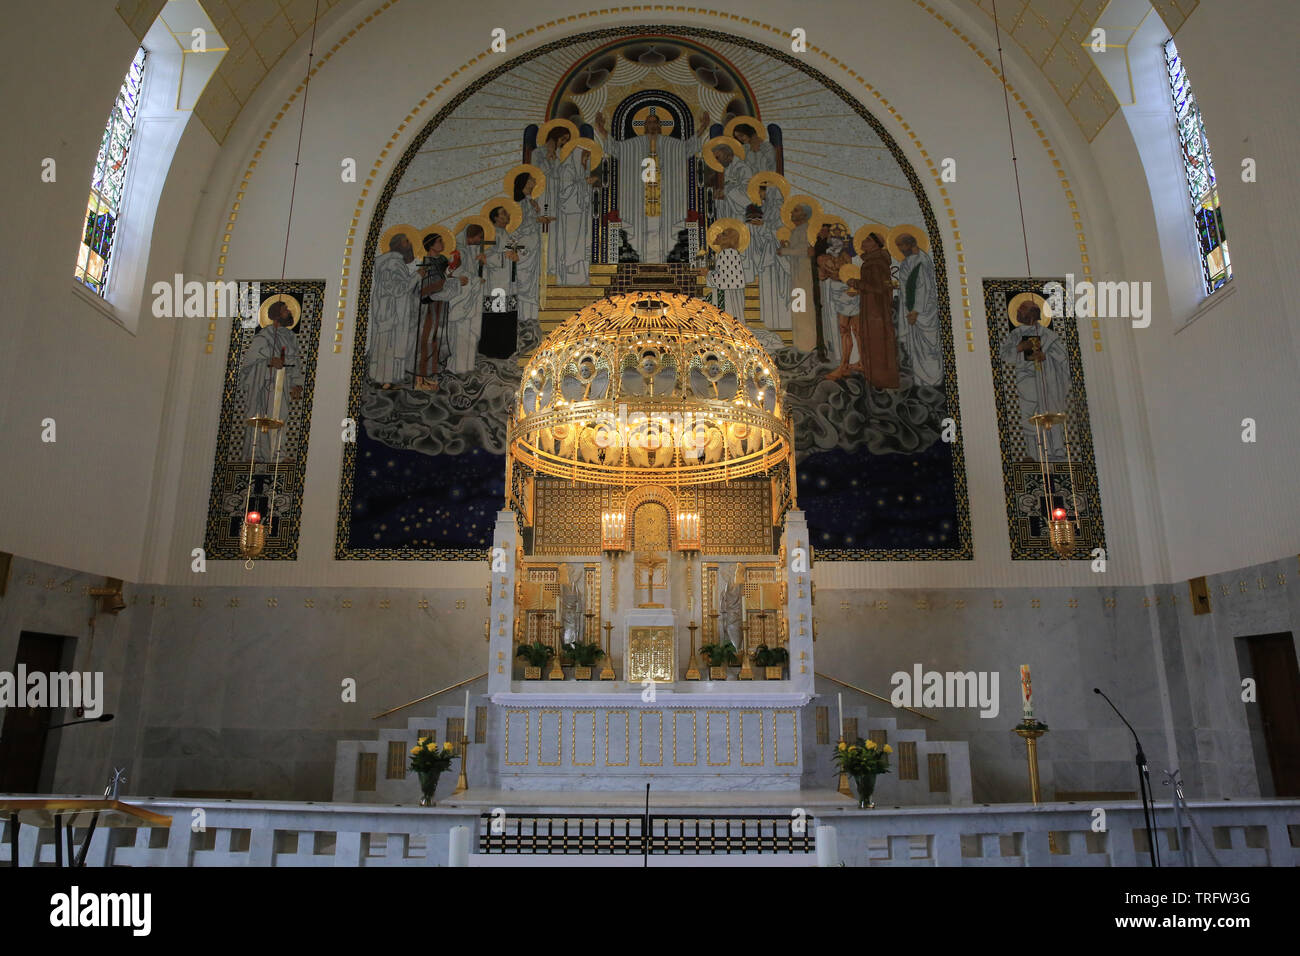 Le Maître-autel et son Baldachin doré en cuivre. Eglise Saint-Léopold am Steinhof. Construite par Otto Wagner entre 1902 et 1907. Vienne. Autriche. Stockfoto